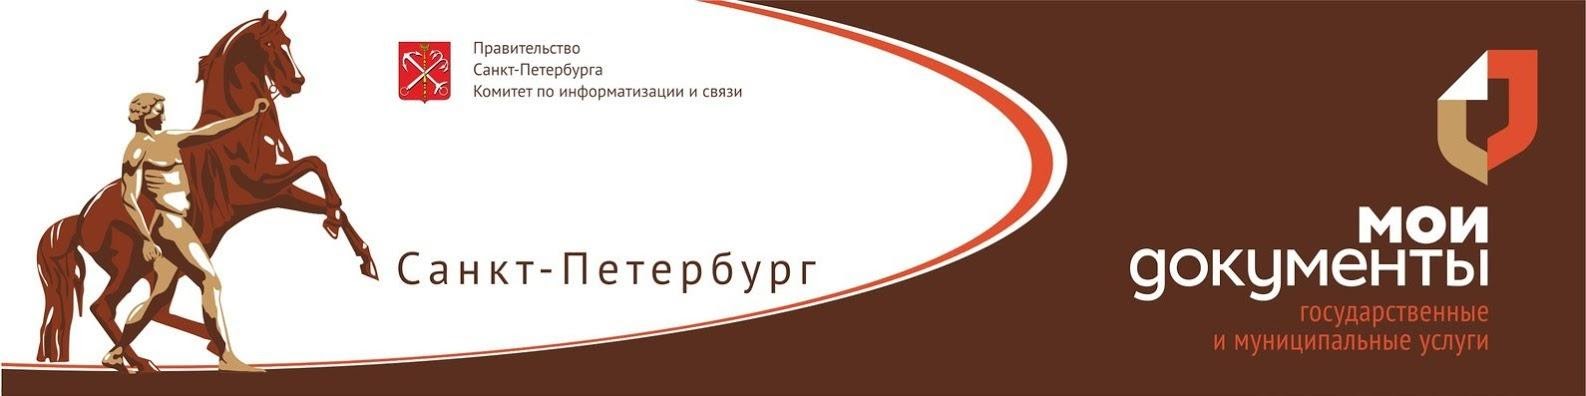 Новый сайт мфц. МФЦ Санкт-Петербург. МФЦ Санкт-Петербург лого. МФЦ СПБ логотип.